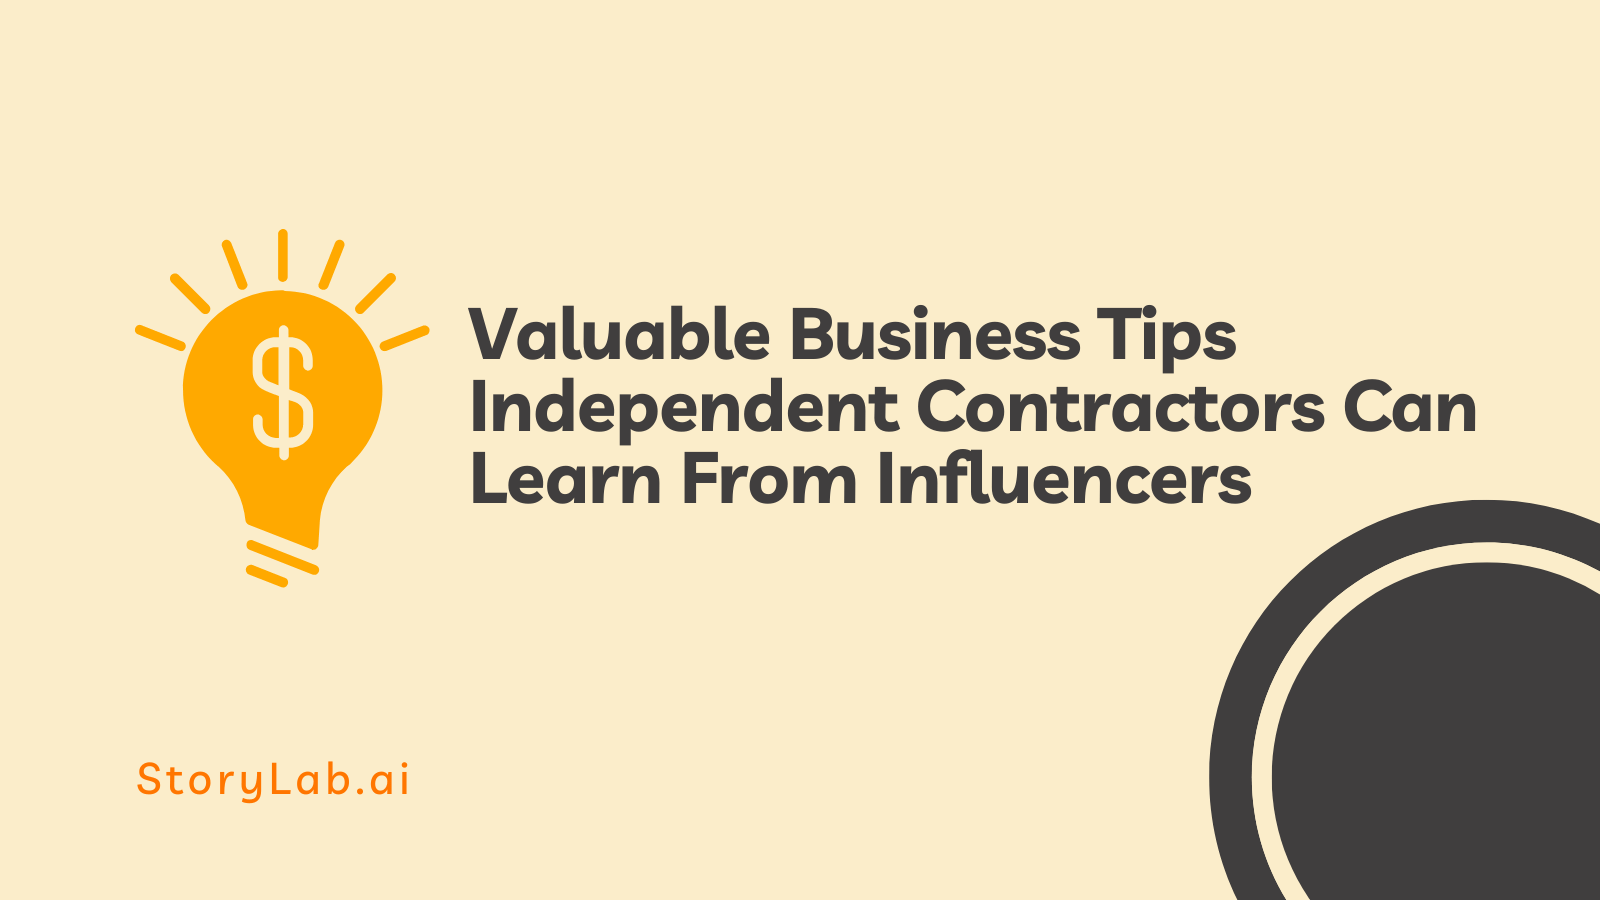 Valiosas dicas de negócios que empreiteiros independentes podem aprender com influenciadores